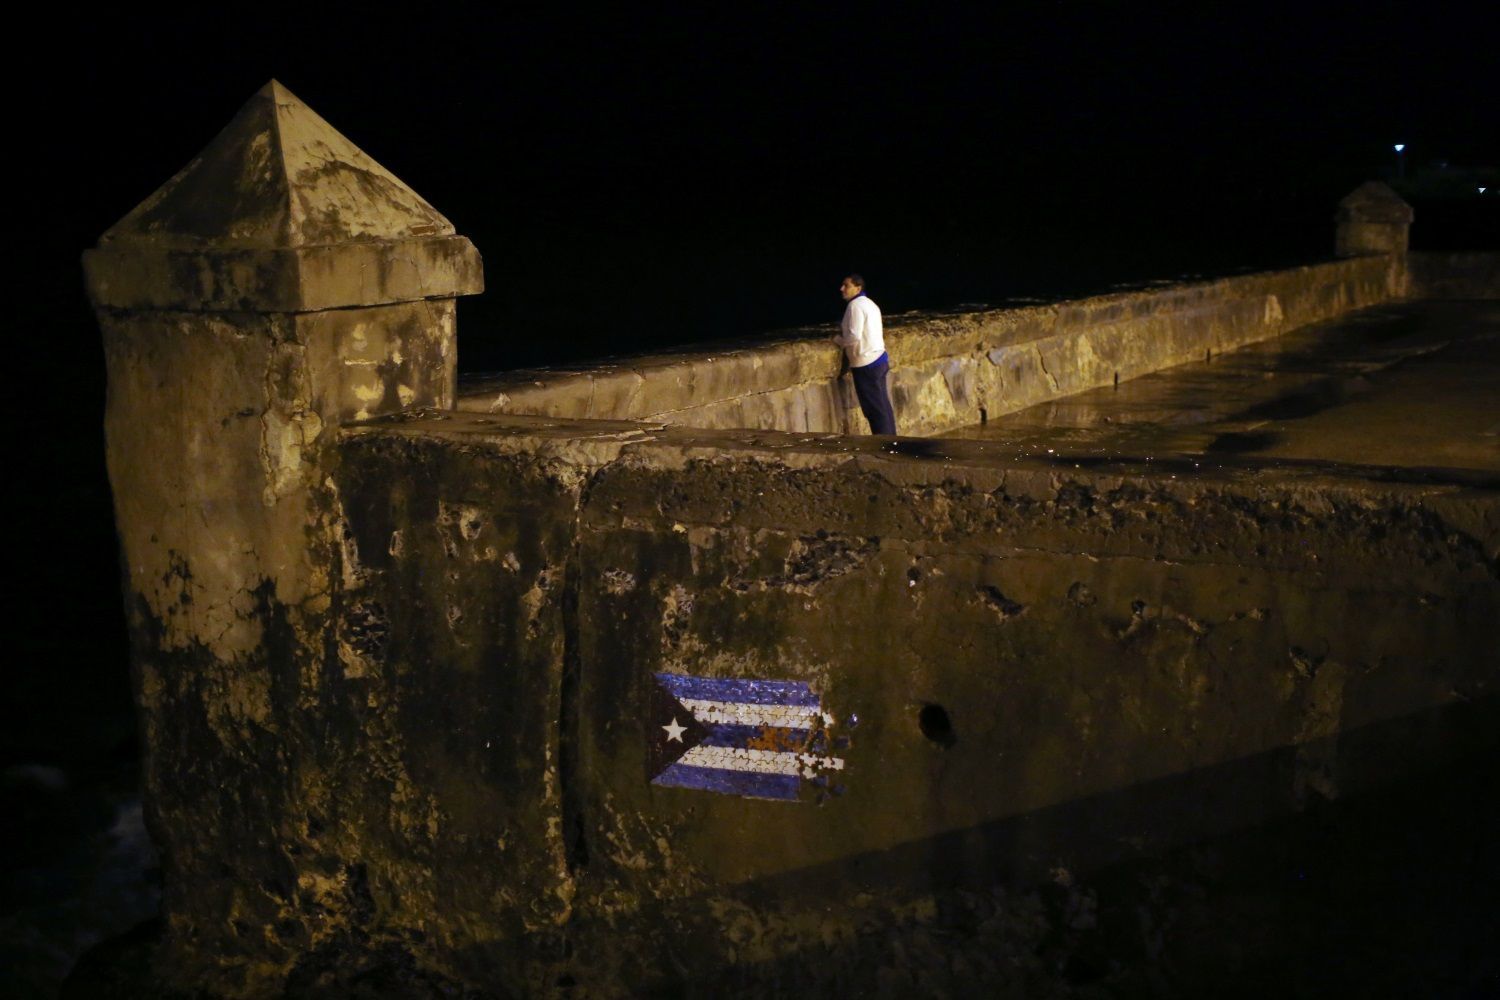 Foto: Kubánci truchlí i slaví. Podívejte se, jak prožívají Castrovu smrt